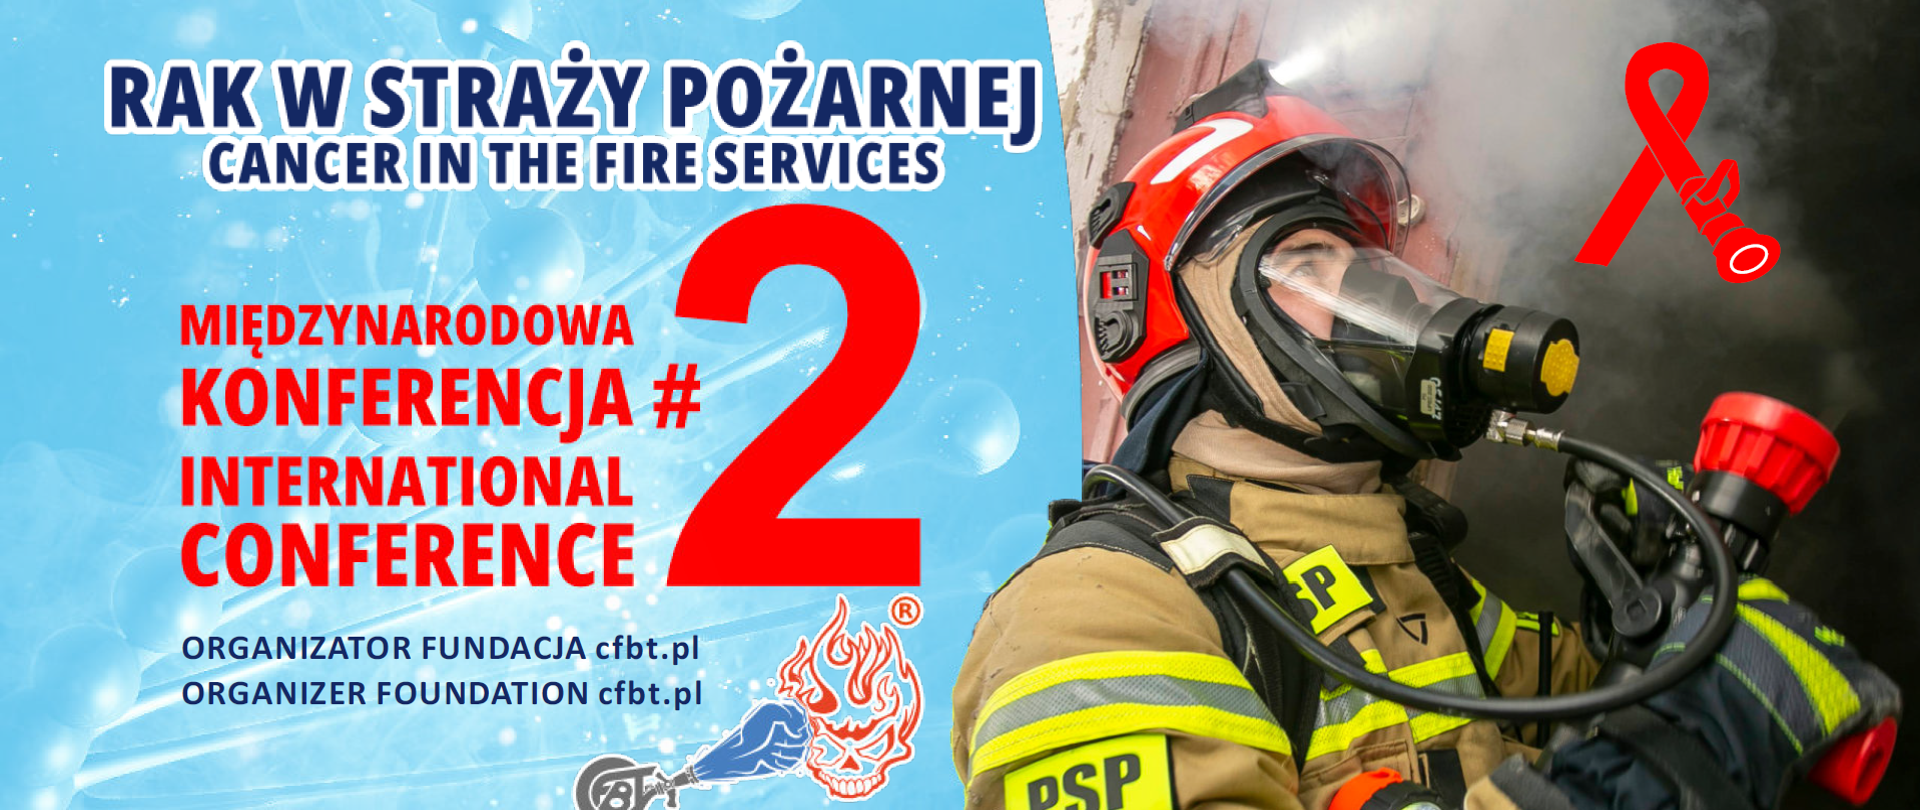 Plakat drugiej Międzynarodowej Konferencji na temat raka w Straży Pożarnej ze strażakiem w ubraniu bojowym. W dolnej częsci logotypy partnerów i patronów medialnych